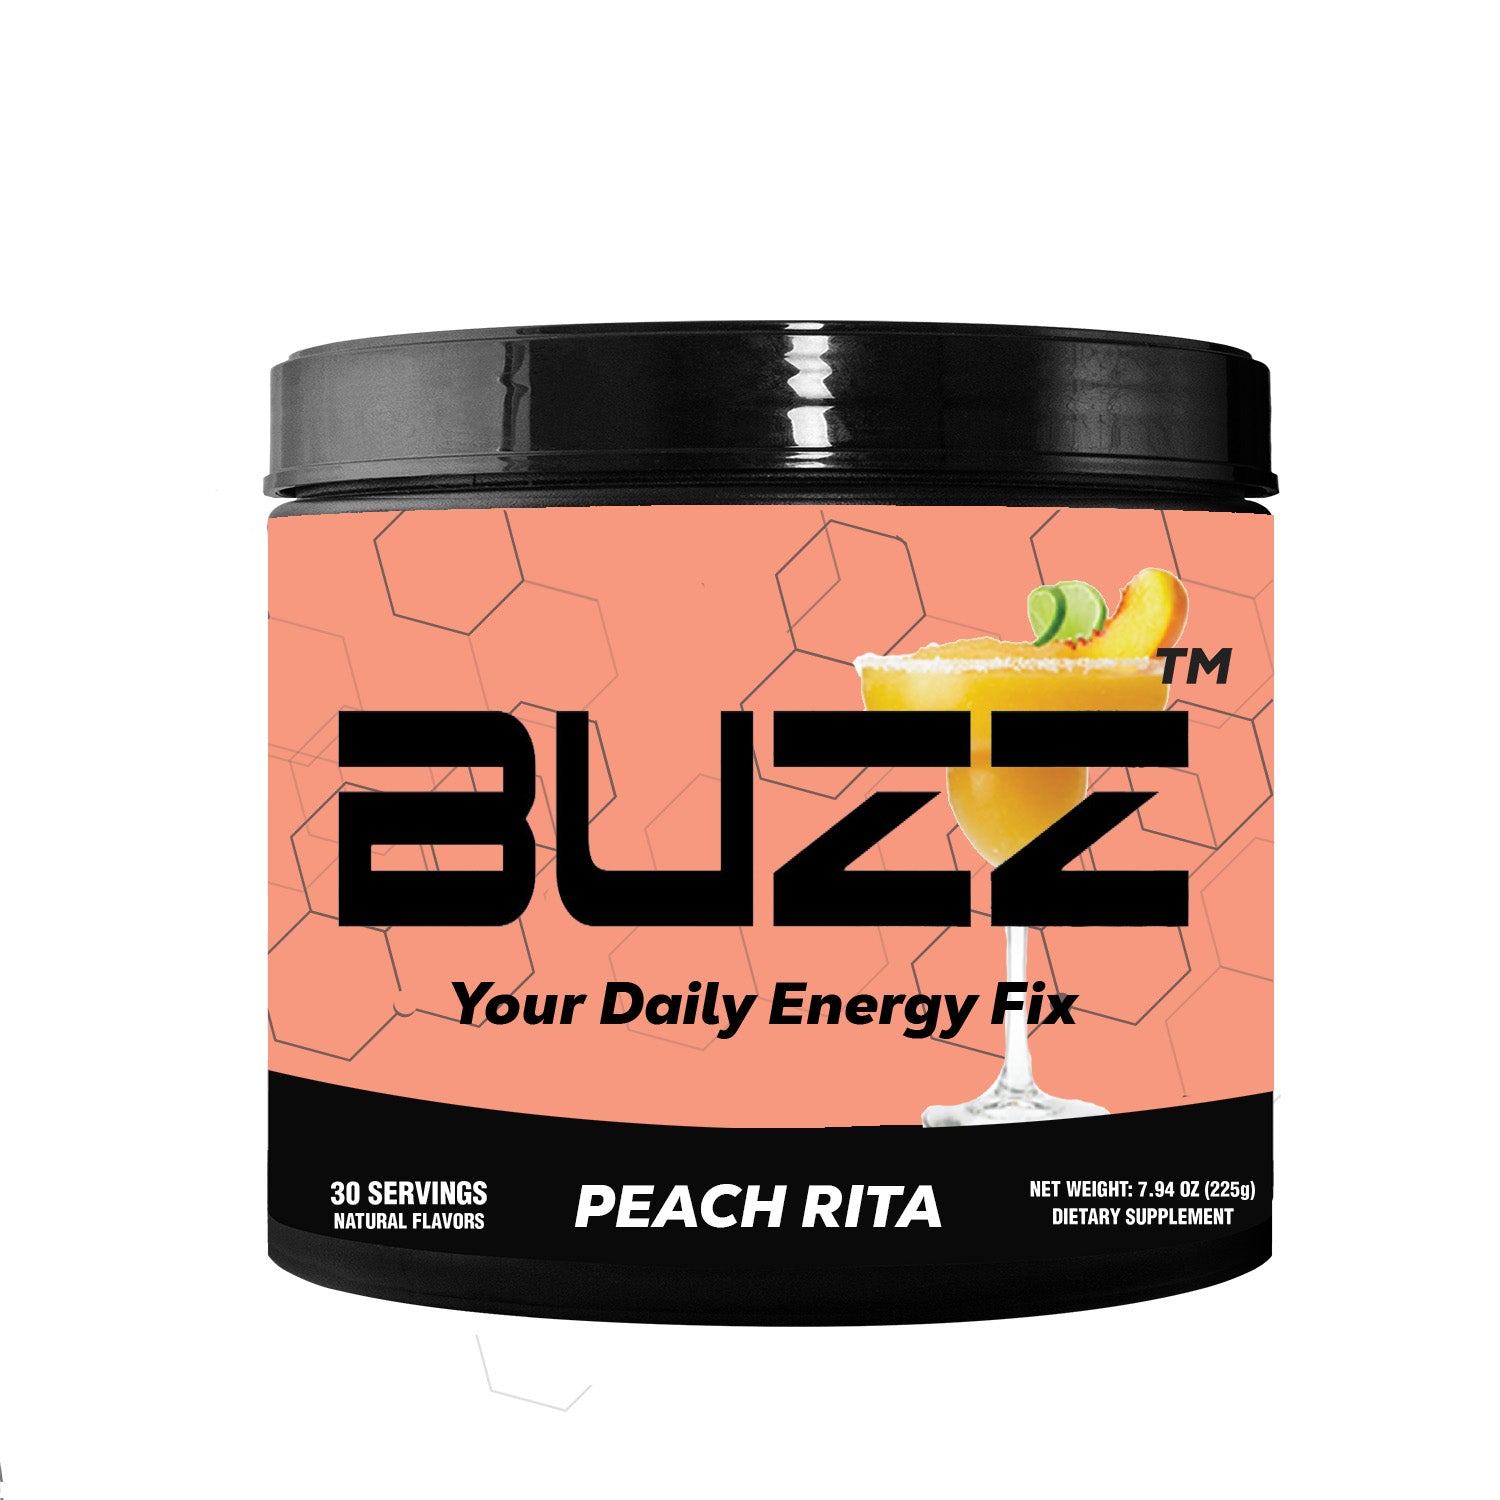 Morning Buzz Peach Rita